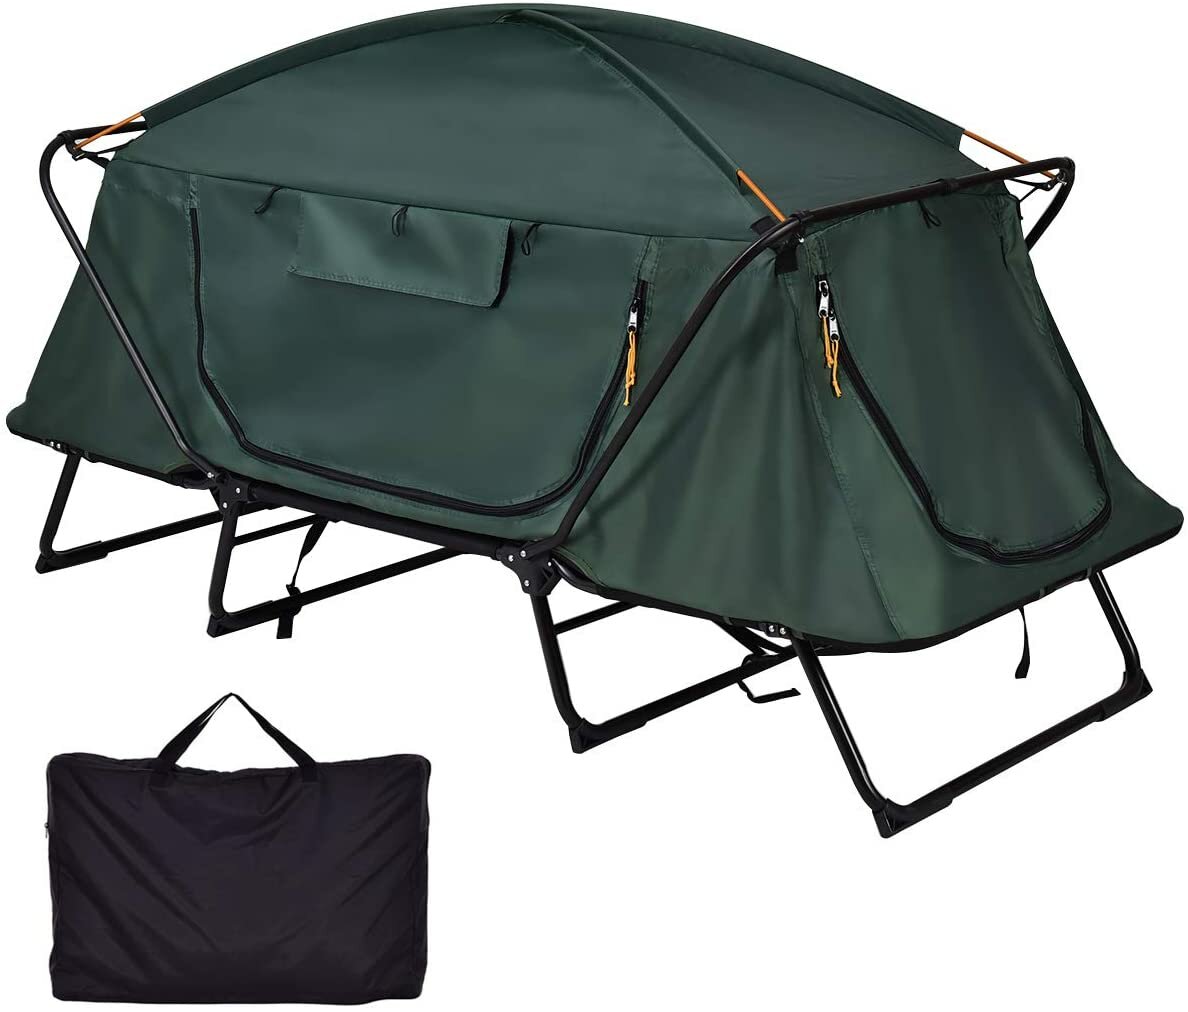 Tenda da campeggio per 2 persone fuori terra pieghevole impermeabile a doppio strato protezione dal freddo anti-vento parasole a cupola per escursioni e viaggi con borsa da trasporto.